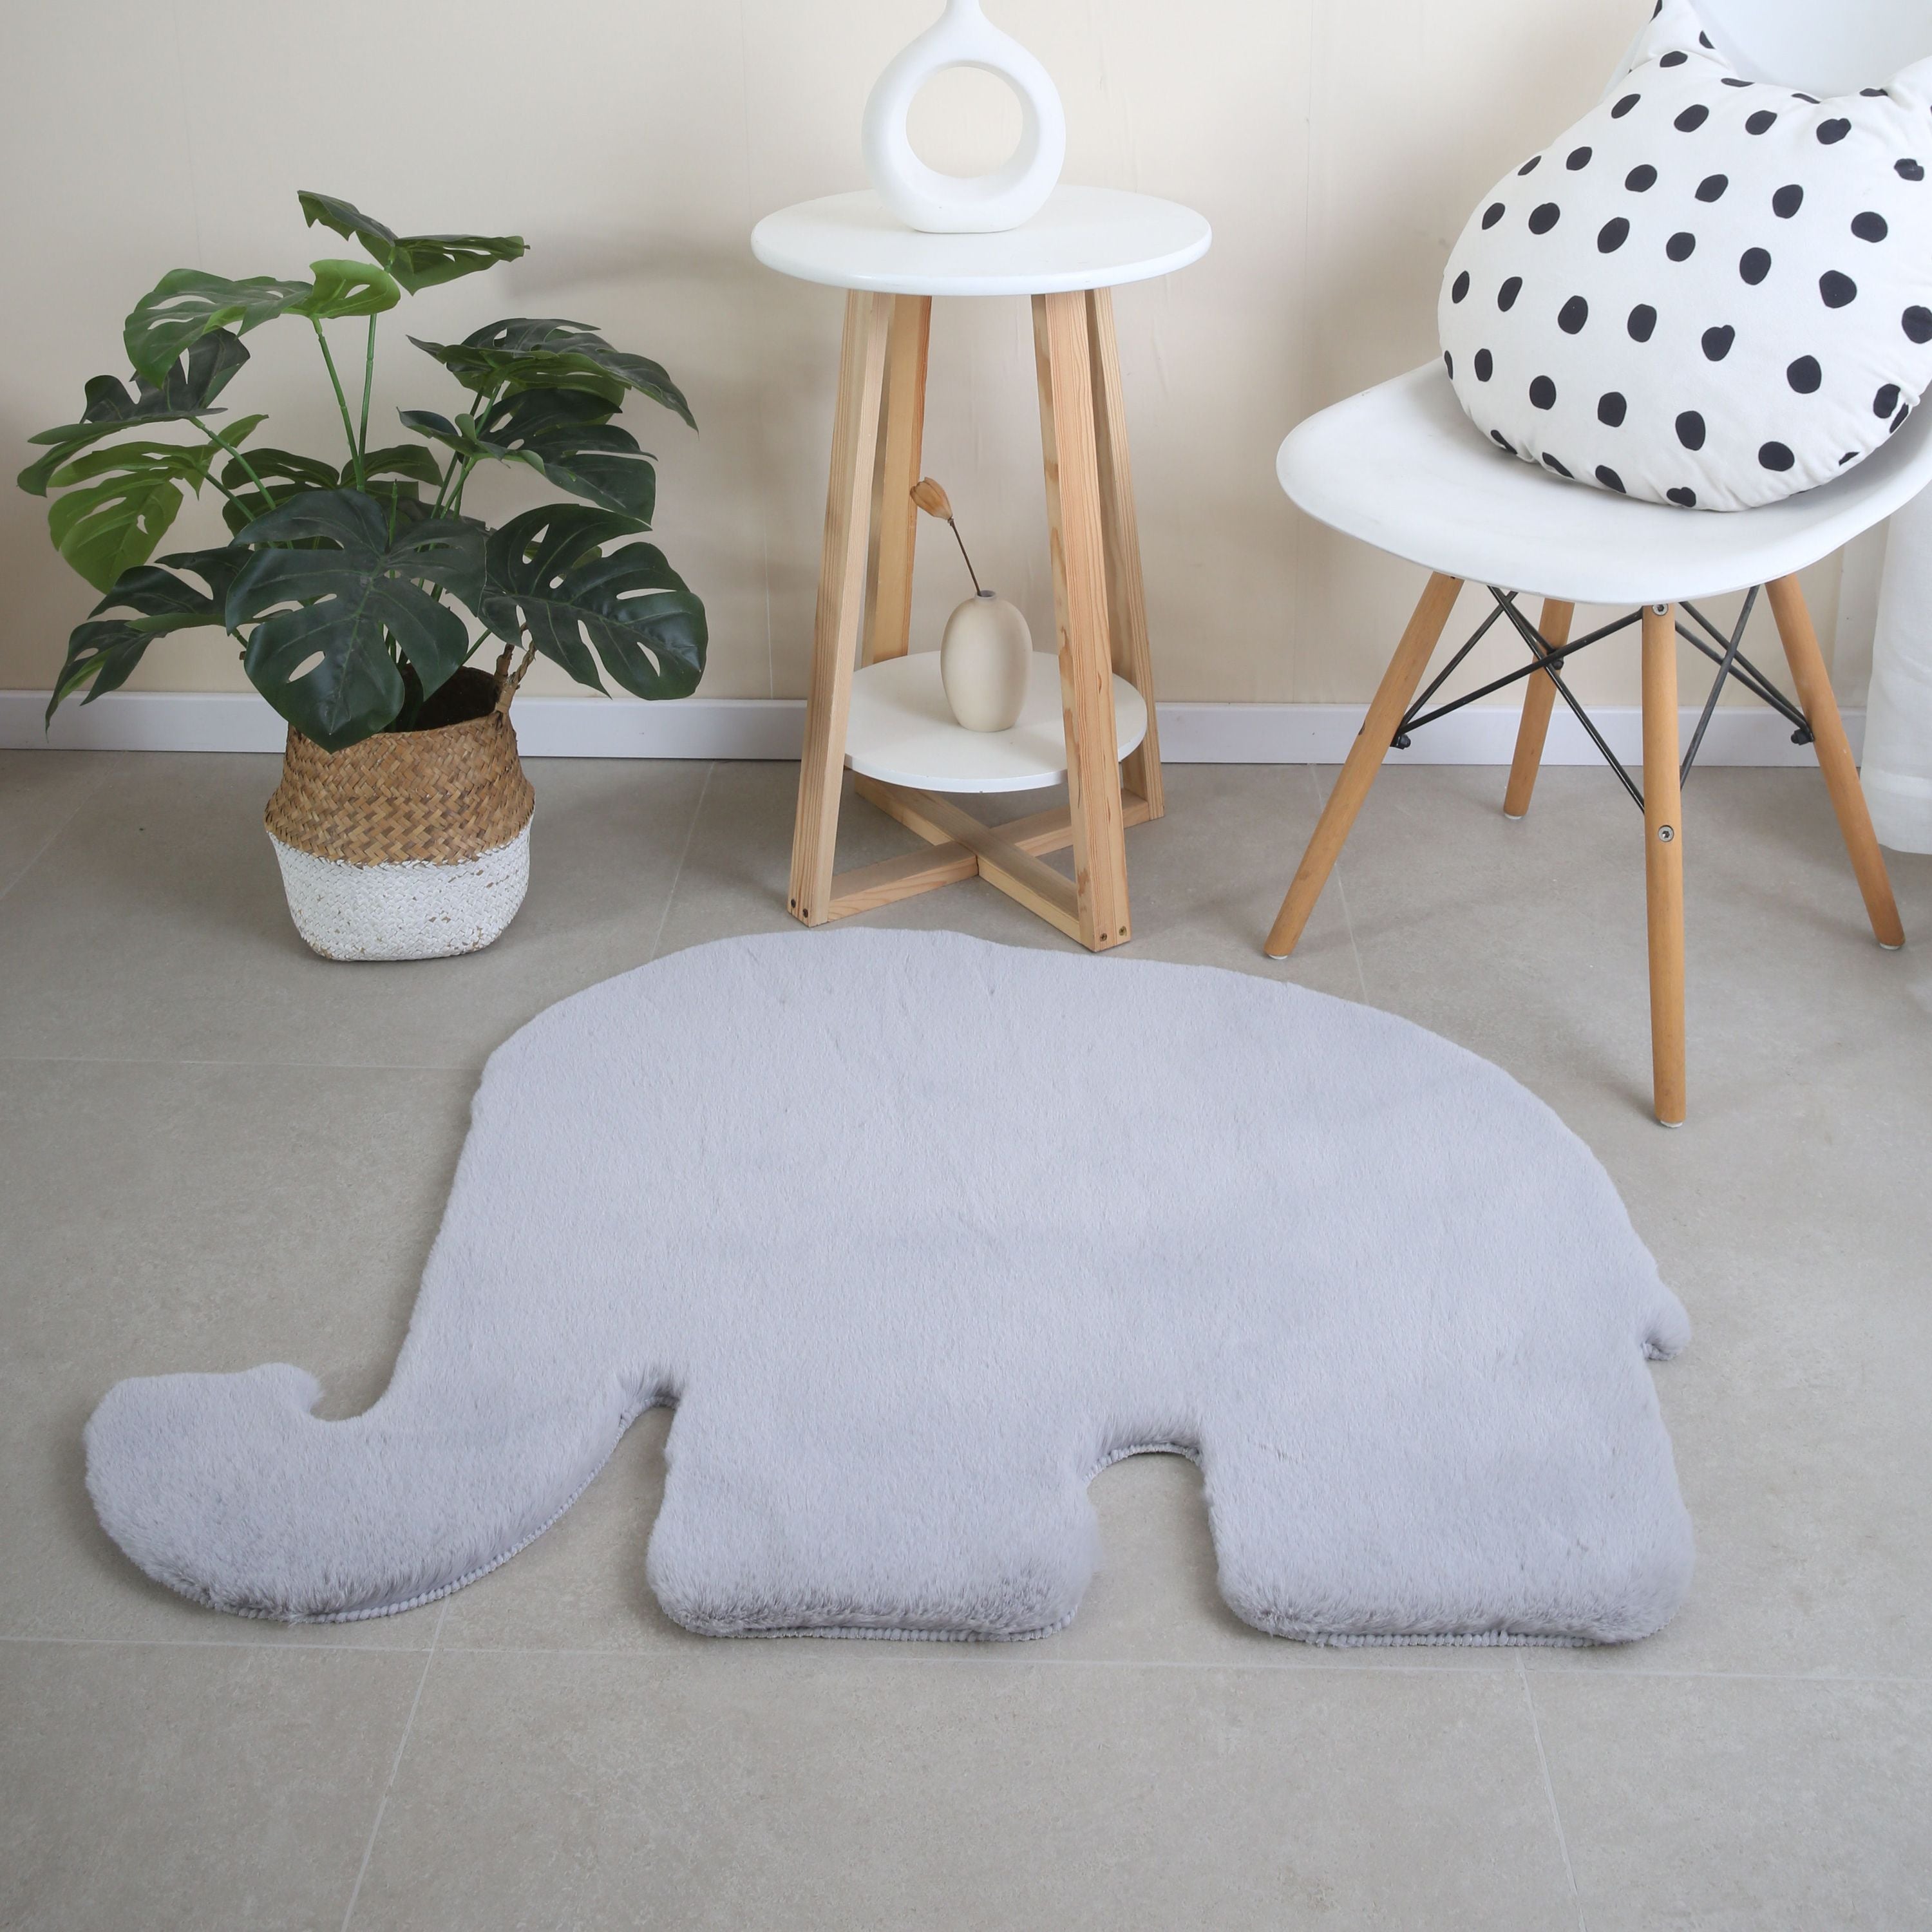 Kinderzimmer Teppich Elefant Design Kinderteppich Waschbarer Hochflor Flauschig